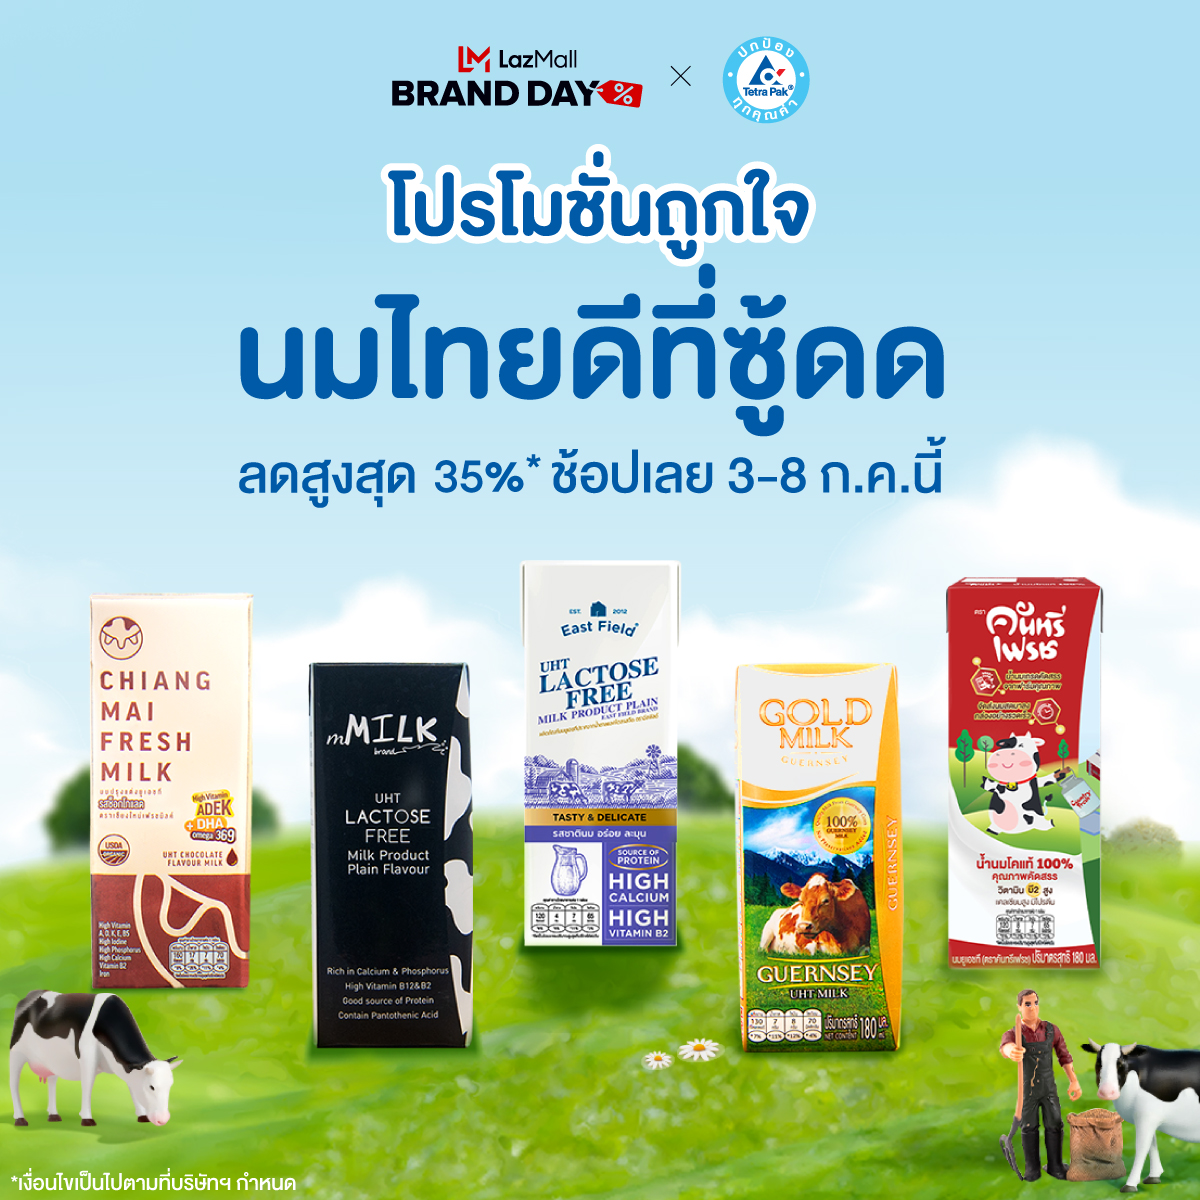 นมไทยดีที่ซู้ดดดด : เต็ดตรา แพ้ค ผนึกกำลังแบรนด์นมไทย  เชียร์คนไทยรับโปรโมชั่นสุดคุ้มทางออนไลน์